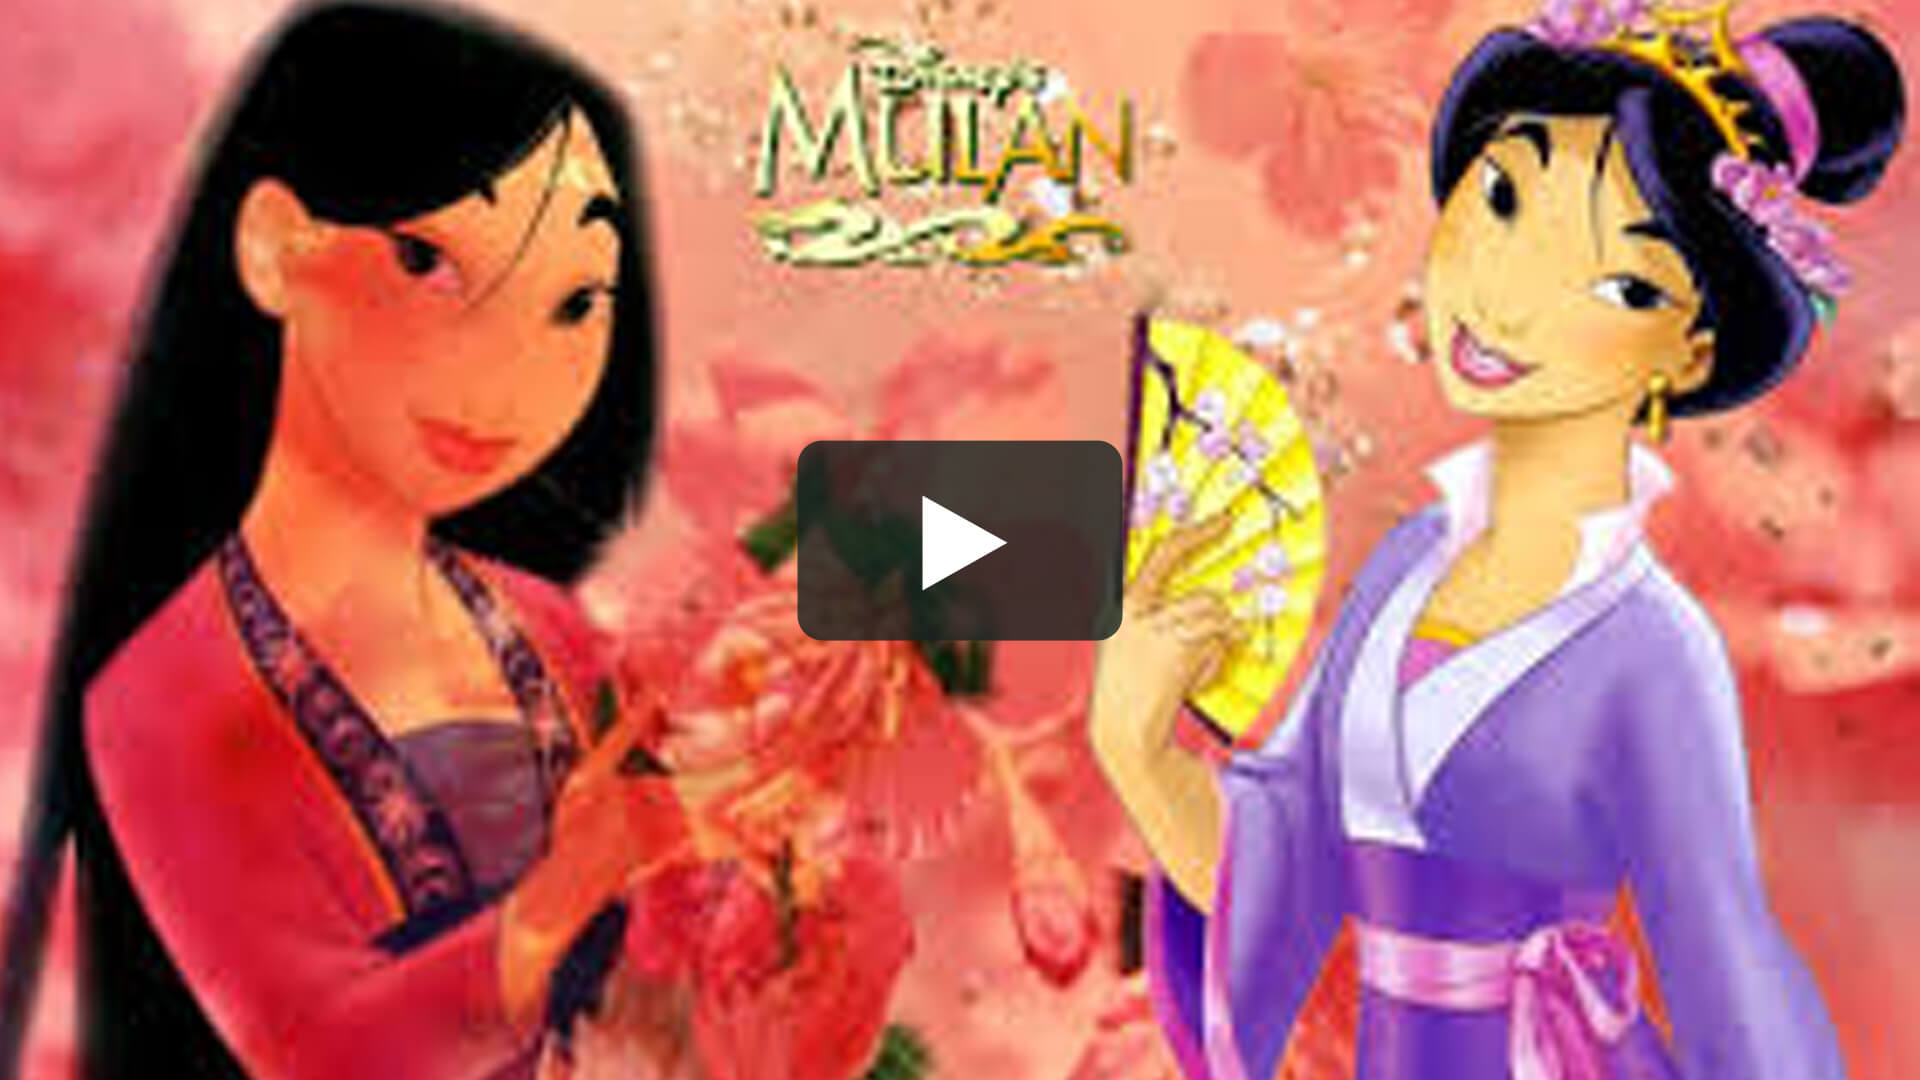 花木兰 - Mulan